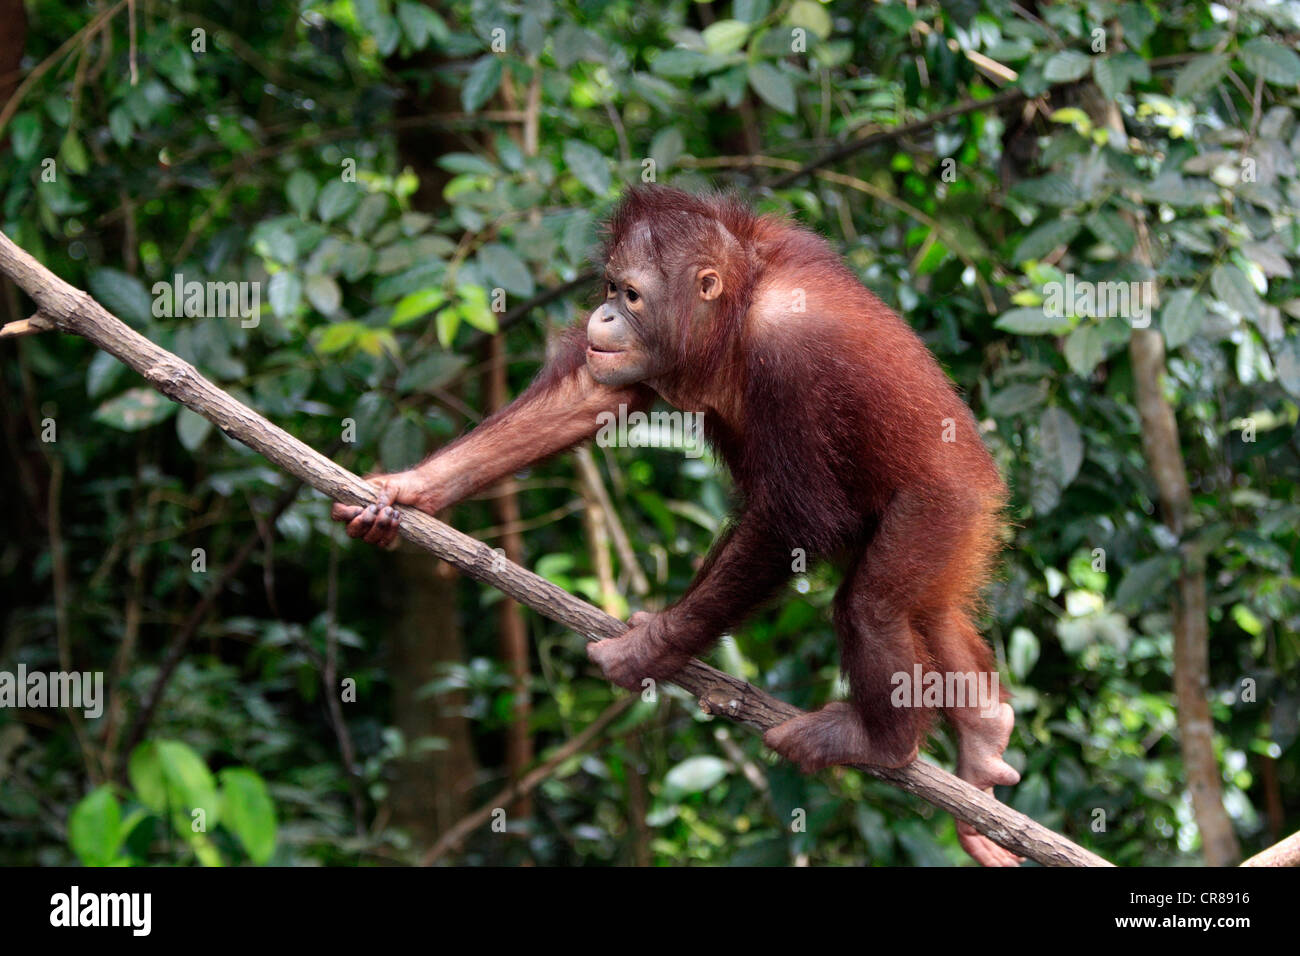 Orangutan (Pongo pygmaeus), half-grown young climbing tree, Sabah, Borneo, Malaysia, Asia Stock Photo